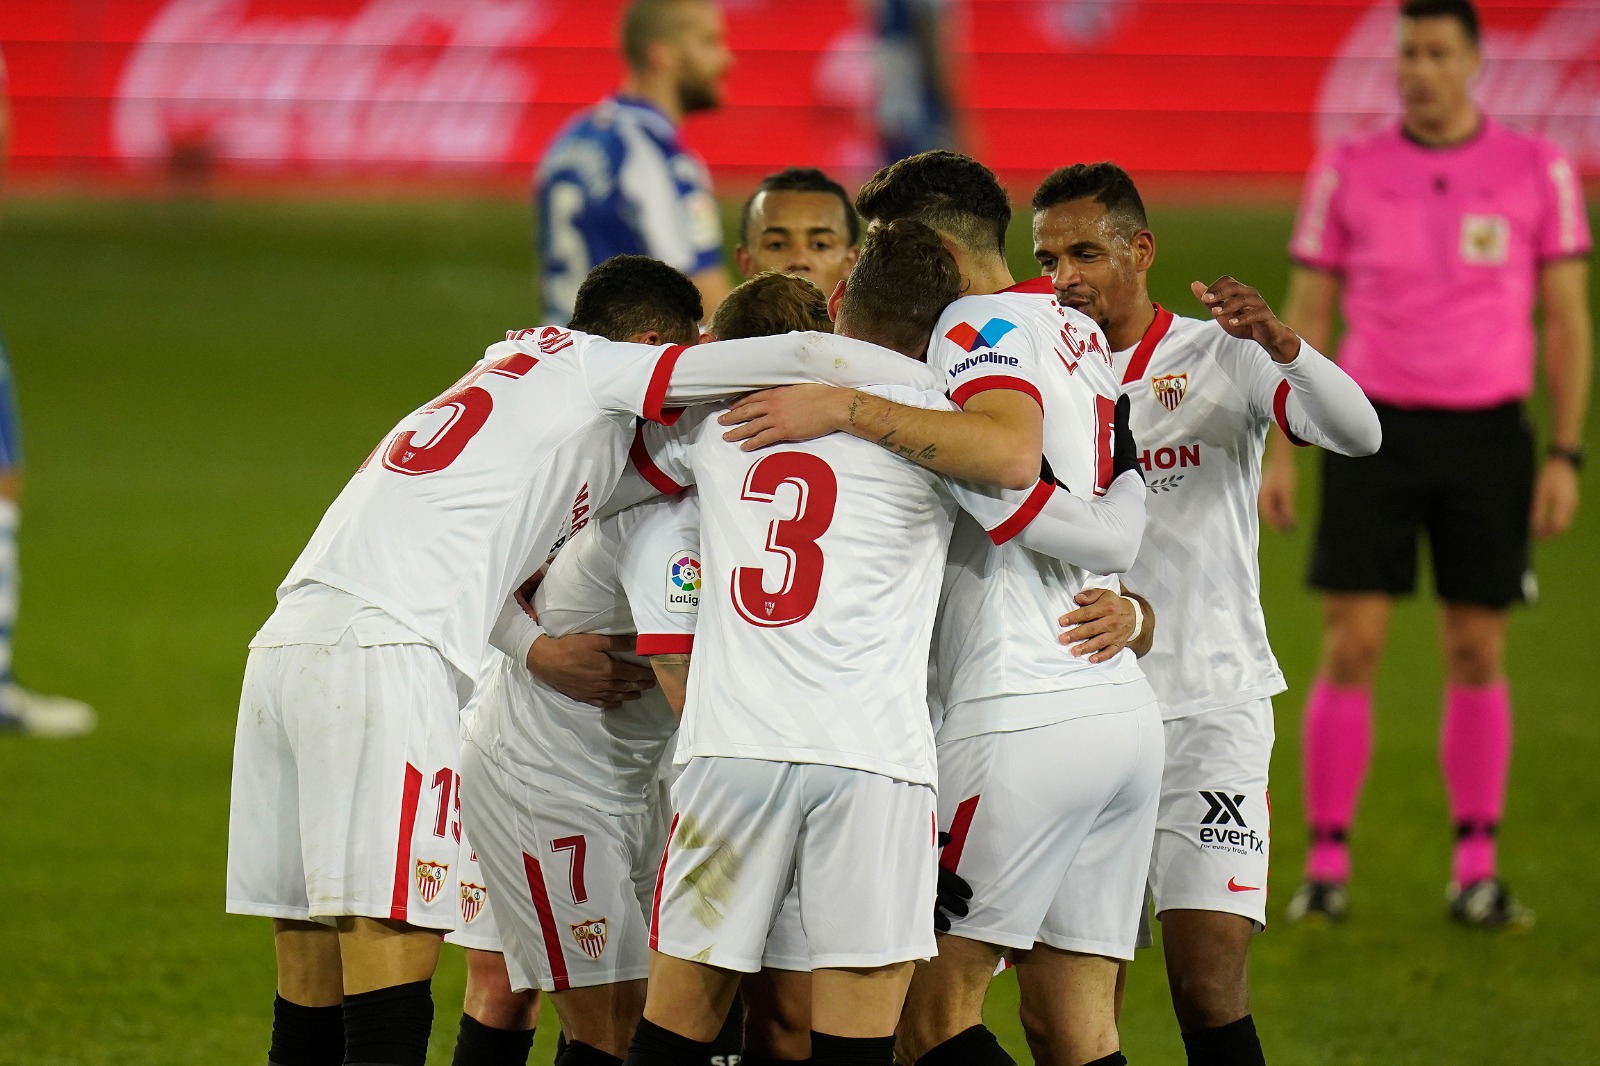 El Sevilla FC celebra uno de los tantos en Vitoria ante el Deportivo Alavés